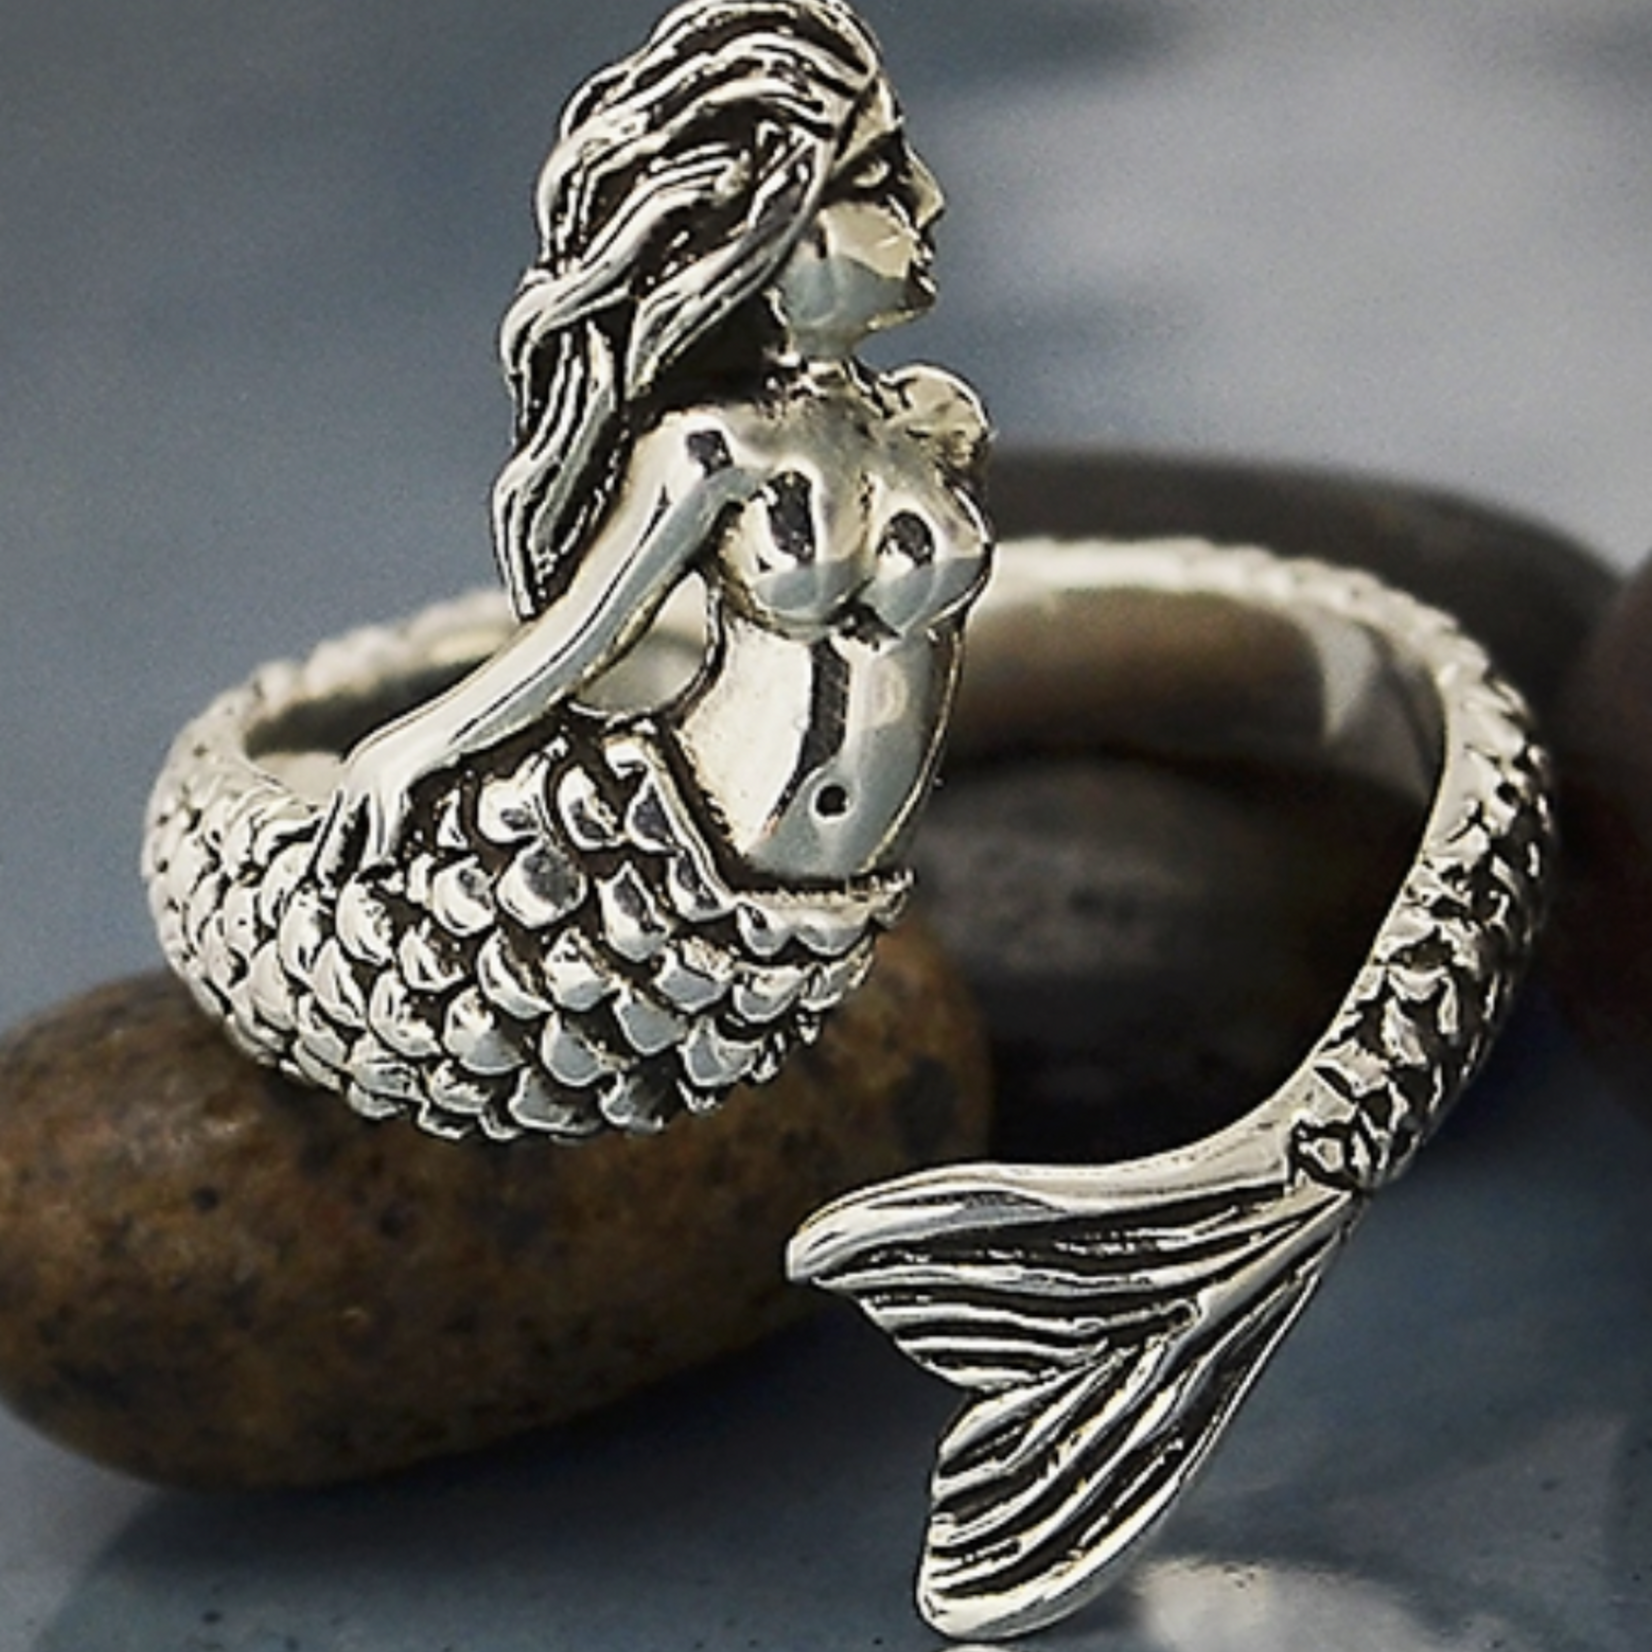 Mermaid Ring · Silver · Adjustable